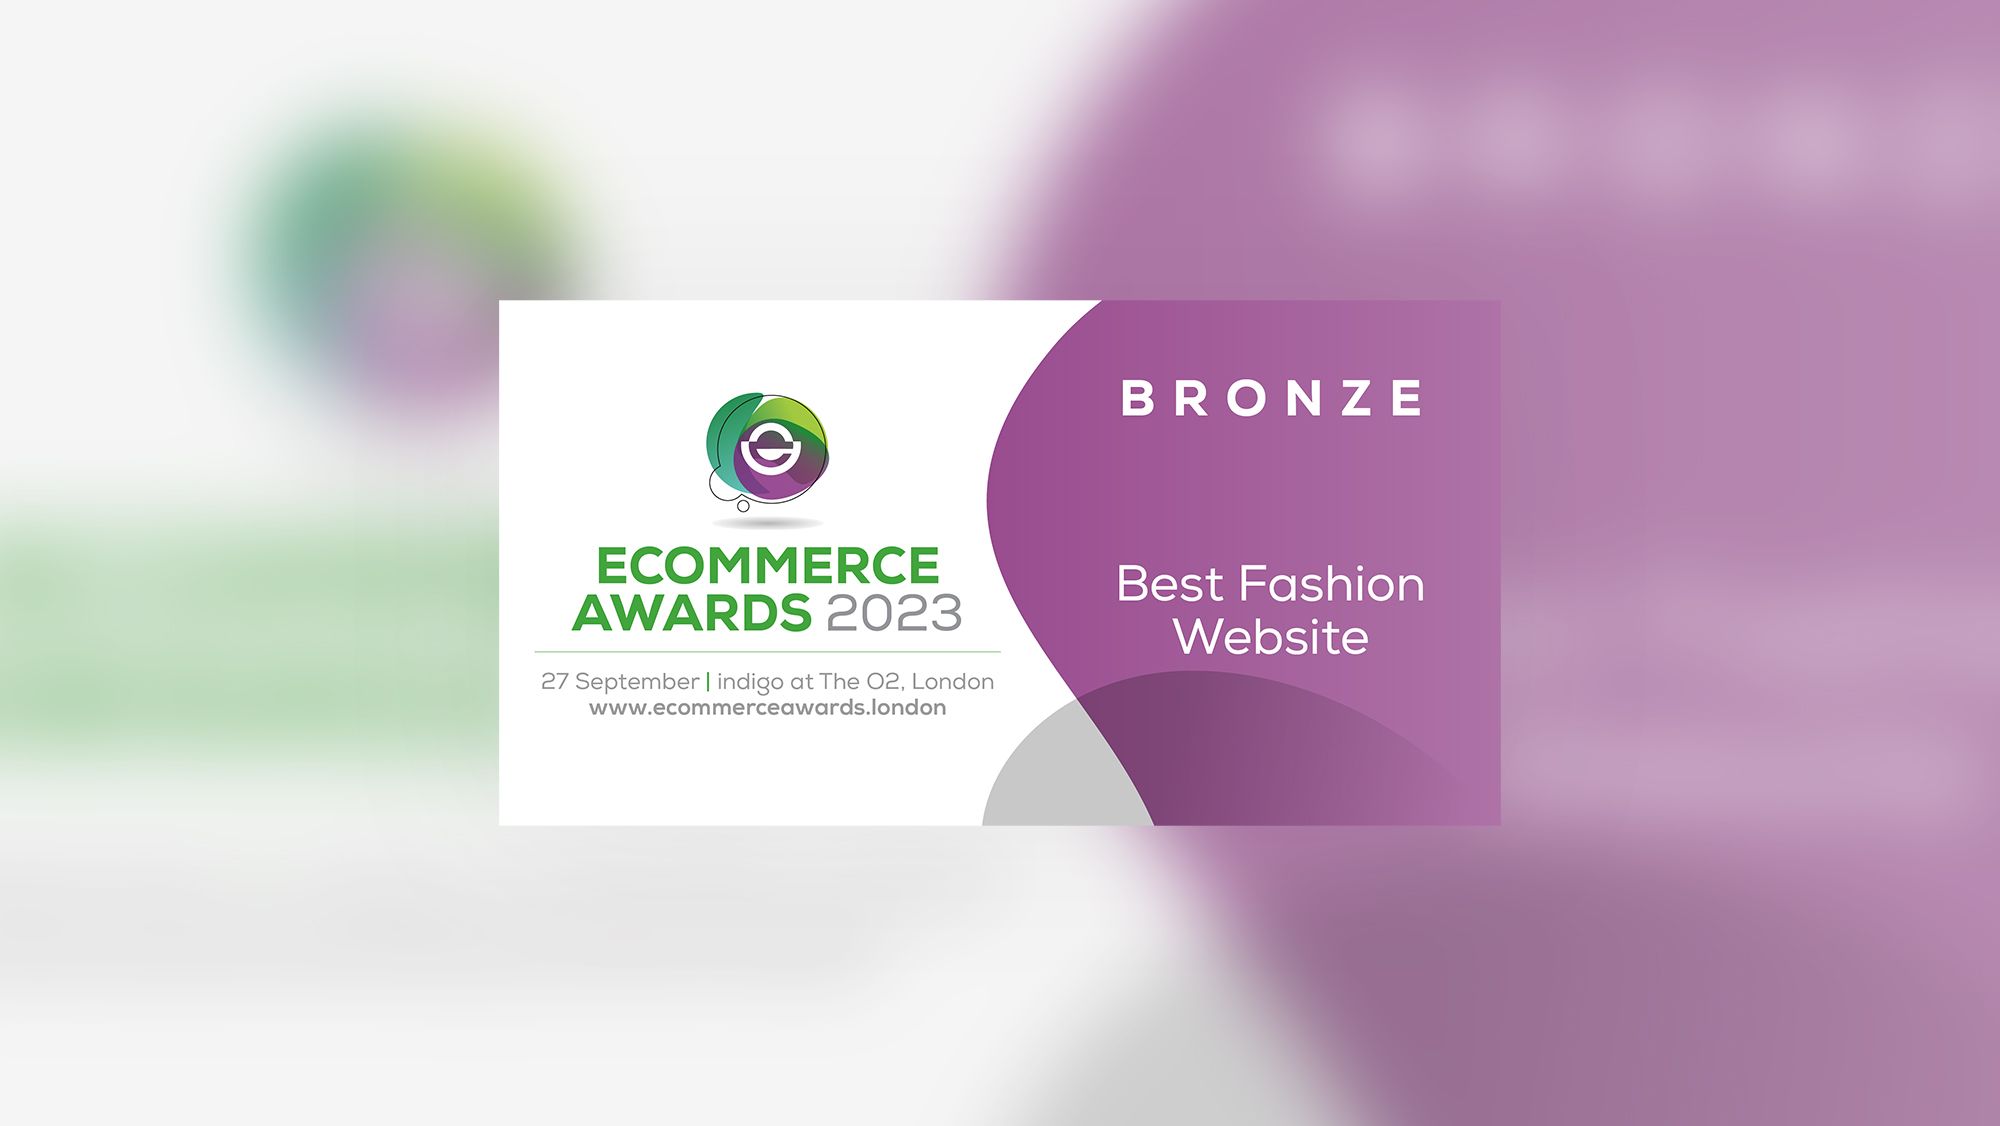 Best Fashion Website Award